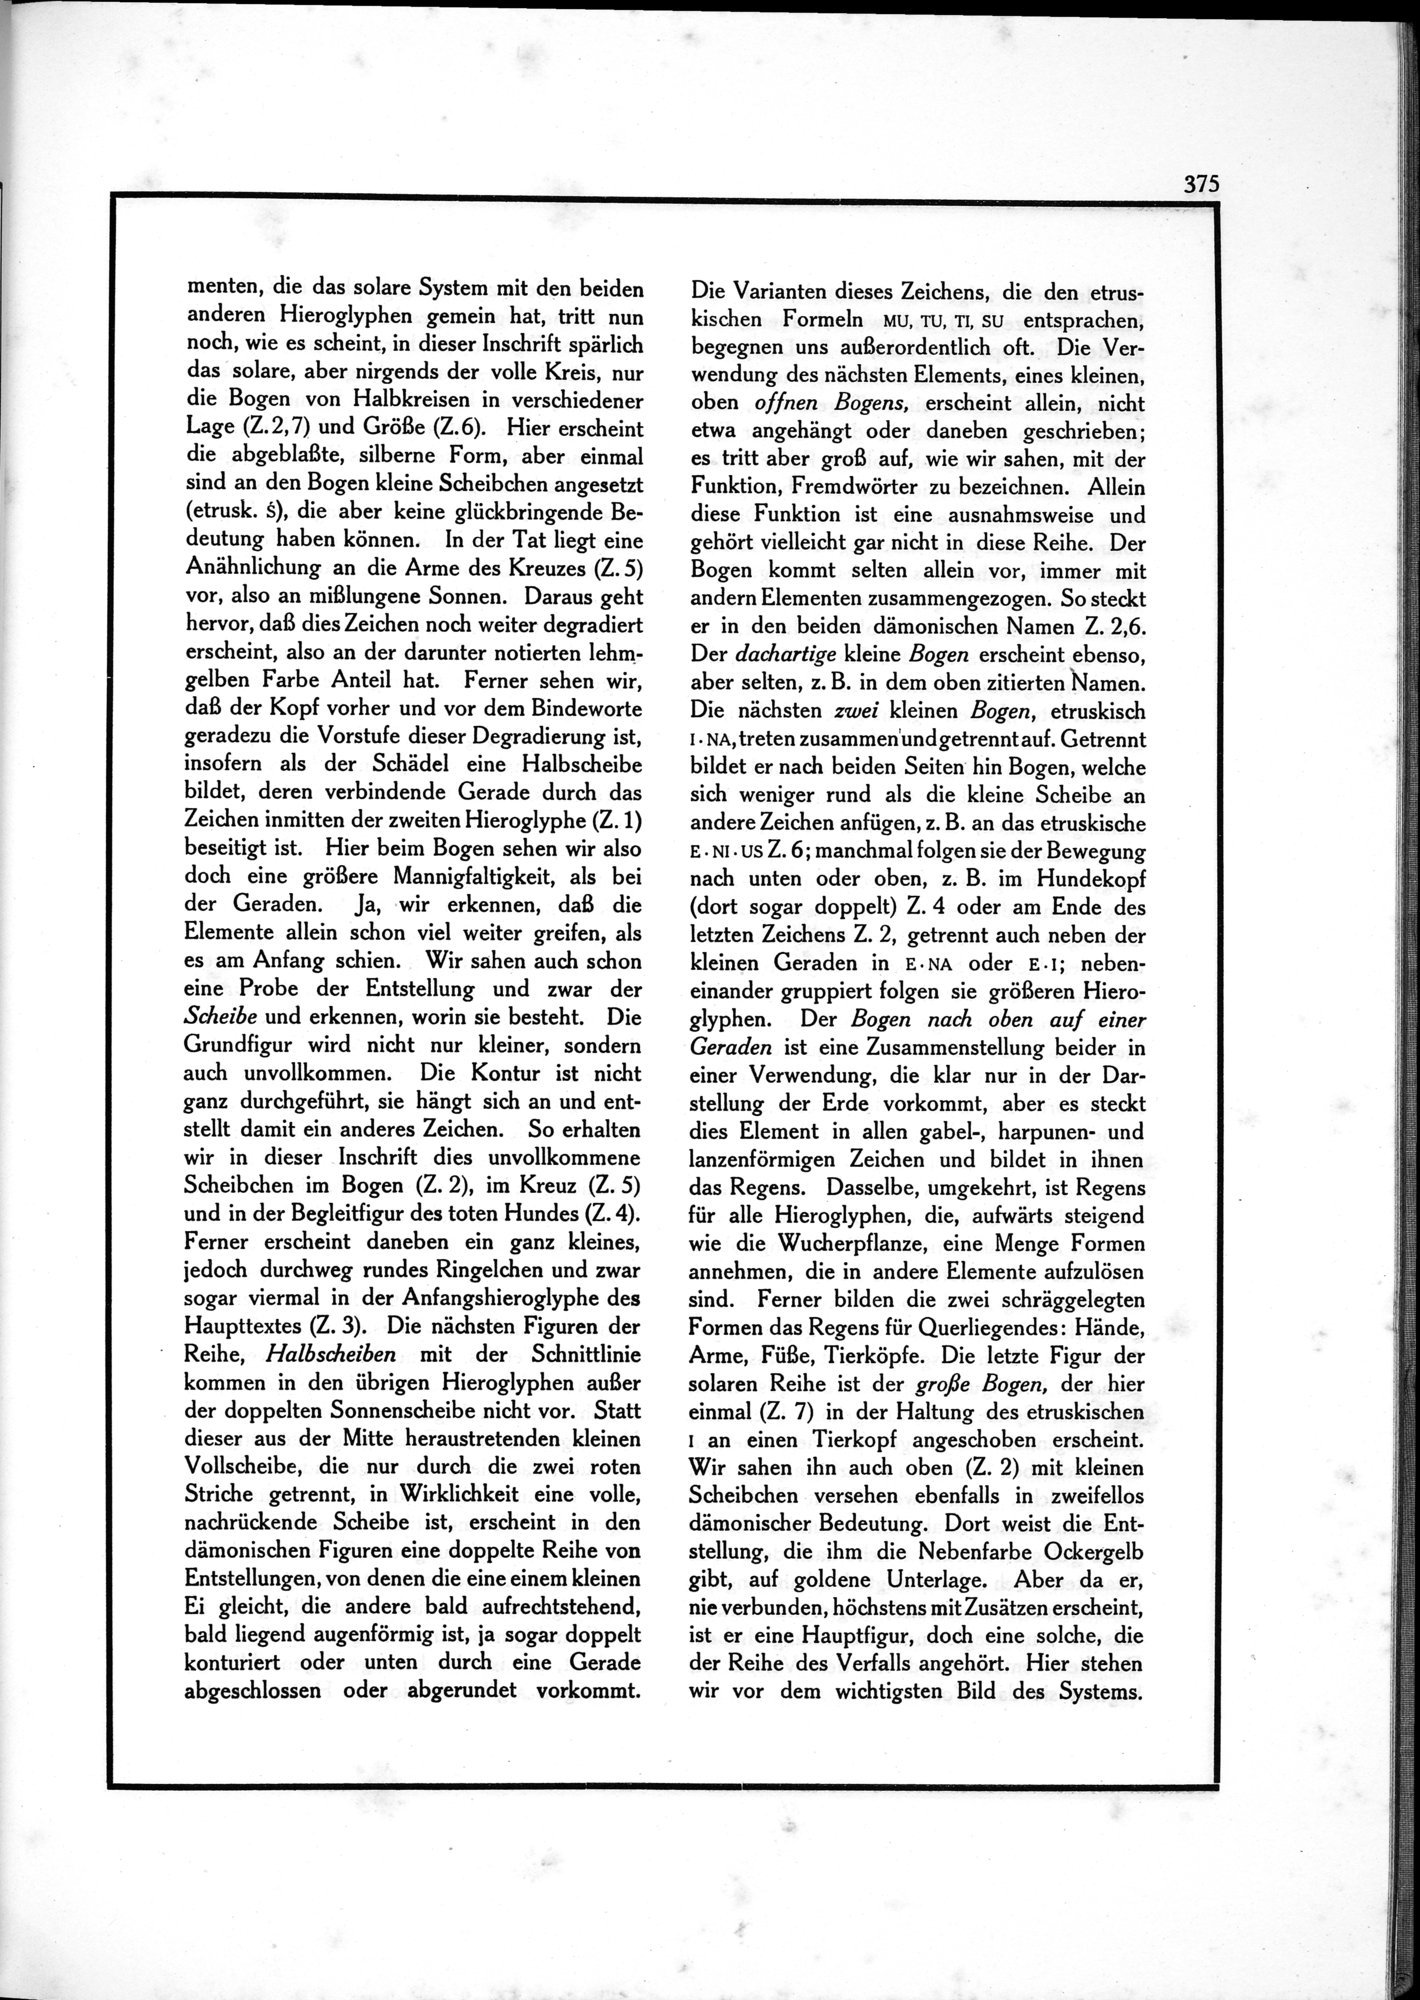 Die Teufel des Avesta und Ihre Beziehungen zur Ikonographie des Buddhismus Zentral-Asiens : vol.1 / Page 379 (Grayscale High Resolution Image)